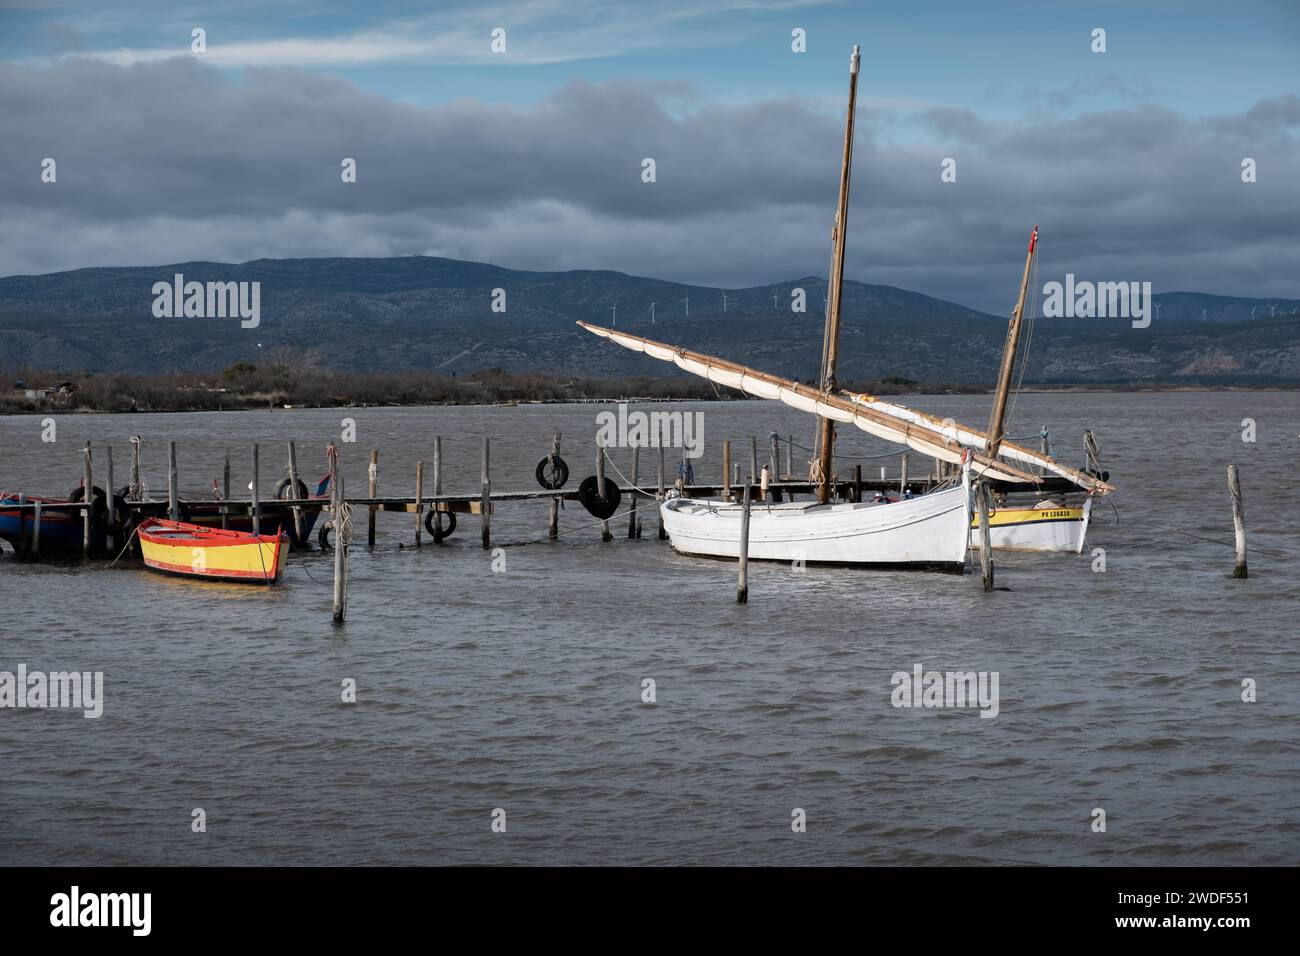 Les bateaux catalans témoignent du patrimoine dans le sud de la France pendant l'hiver Banque D'Images